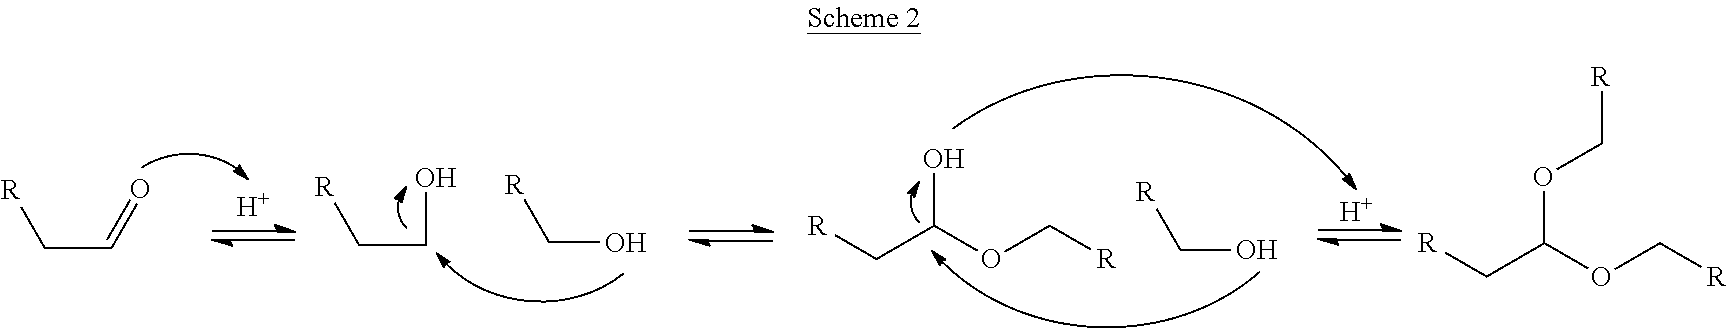 Process for converting bio-oil